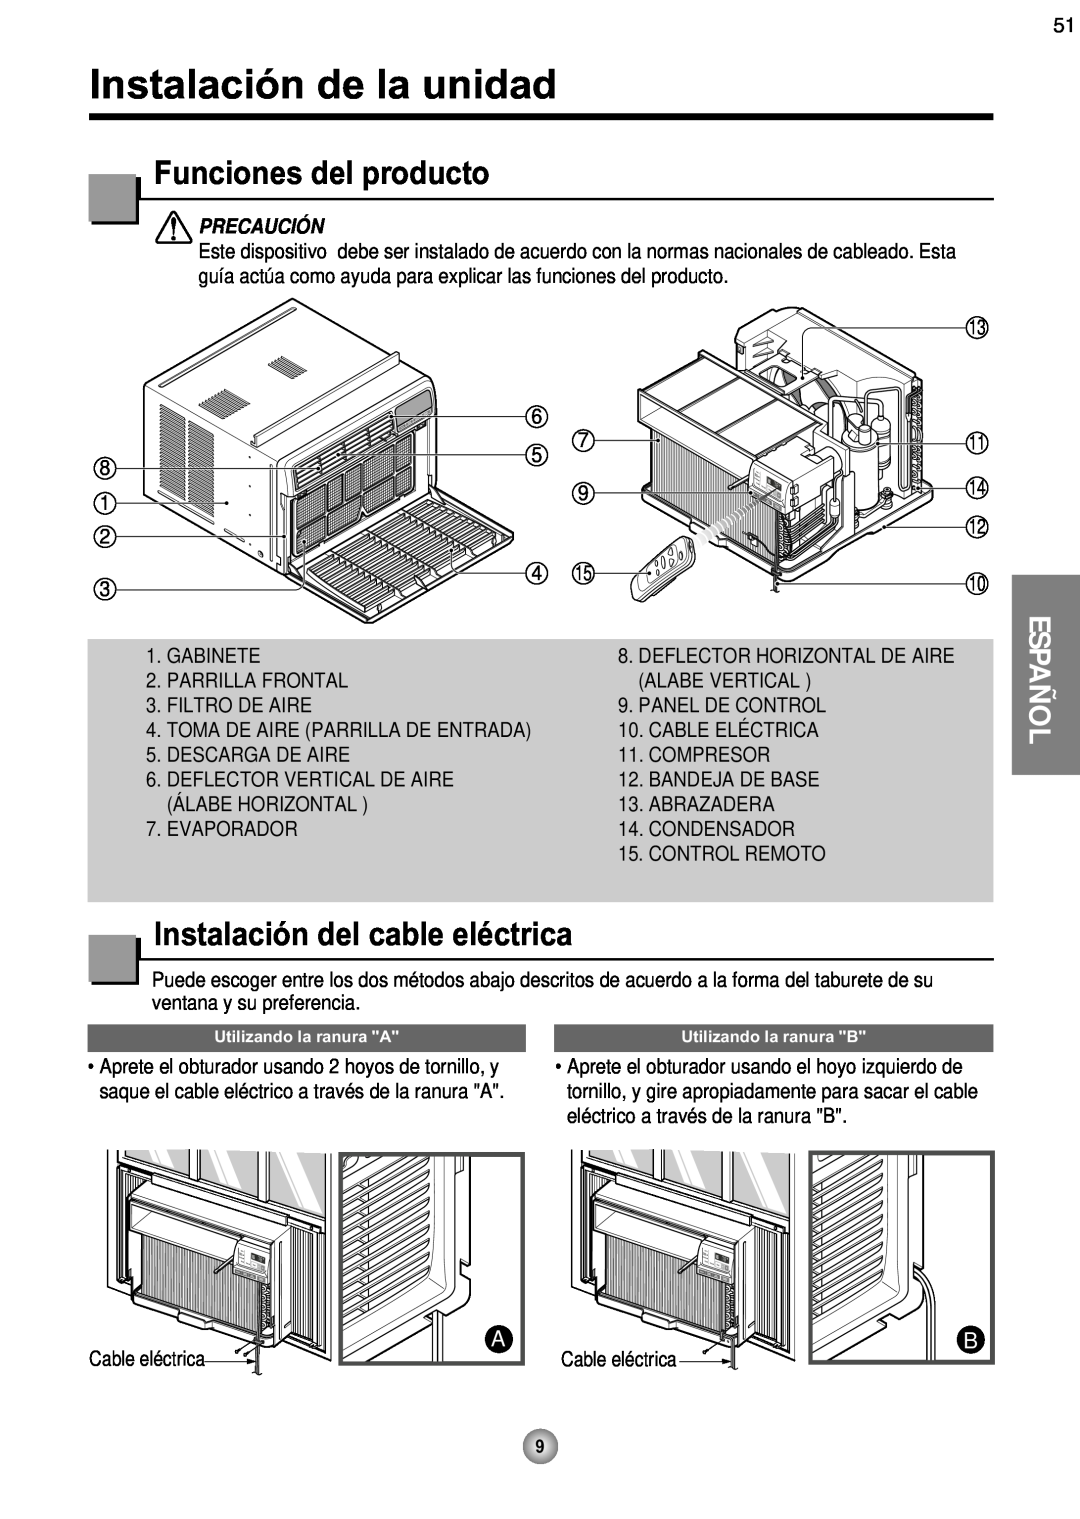 Friedrich CP08 Instalación de la unidad, Funciones del producto, Instalación del cable eléctrica, Español, Precaución 